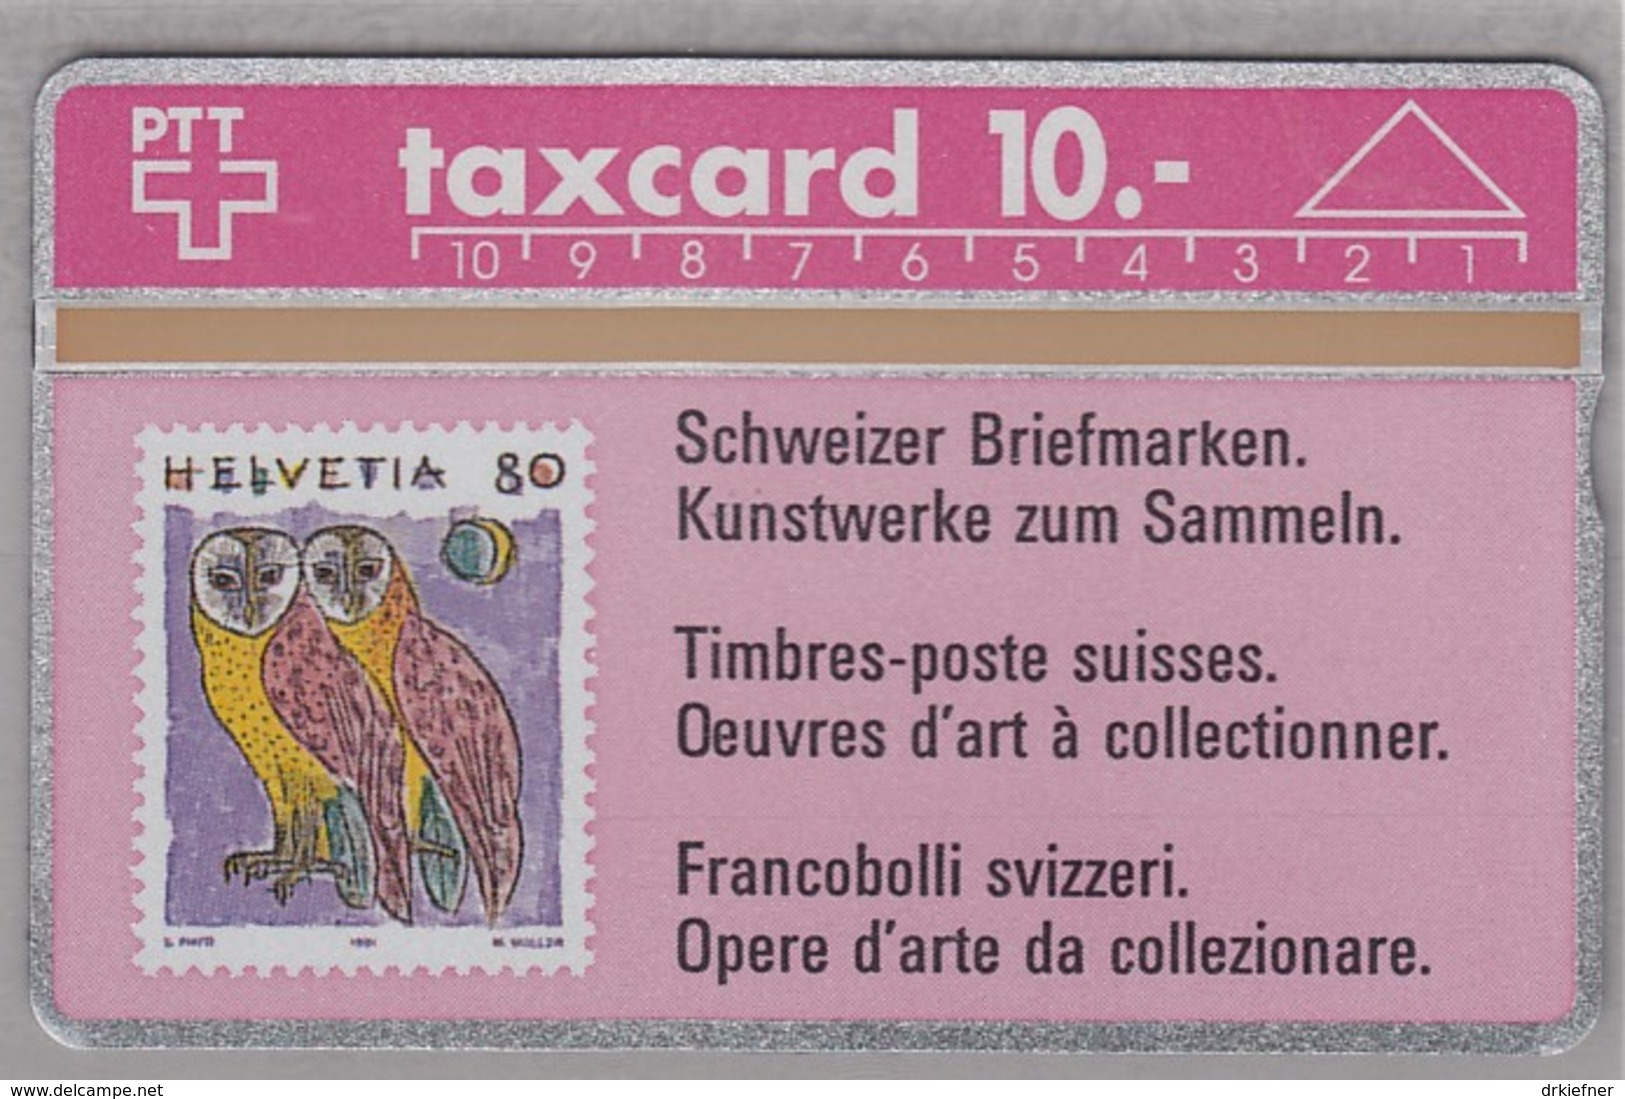 SCHWEIZ TELEFONKARTE Taxcard 10 SFr, Motiv MiNr. 1437, Schleiereule, 1991 - Stamps & Coins